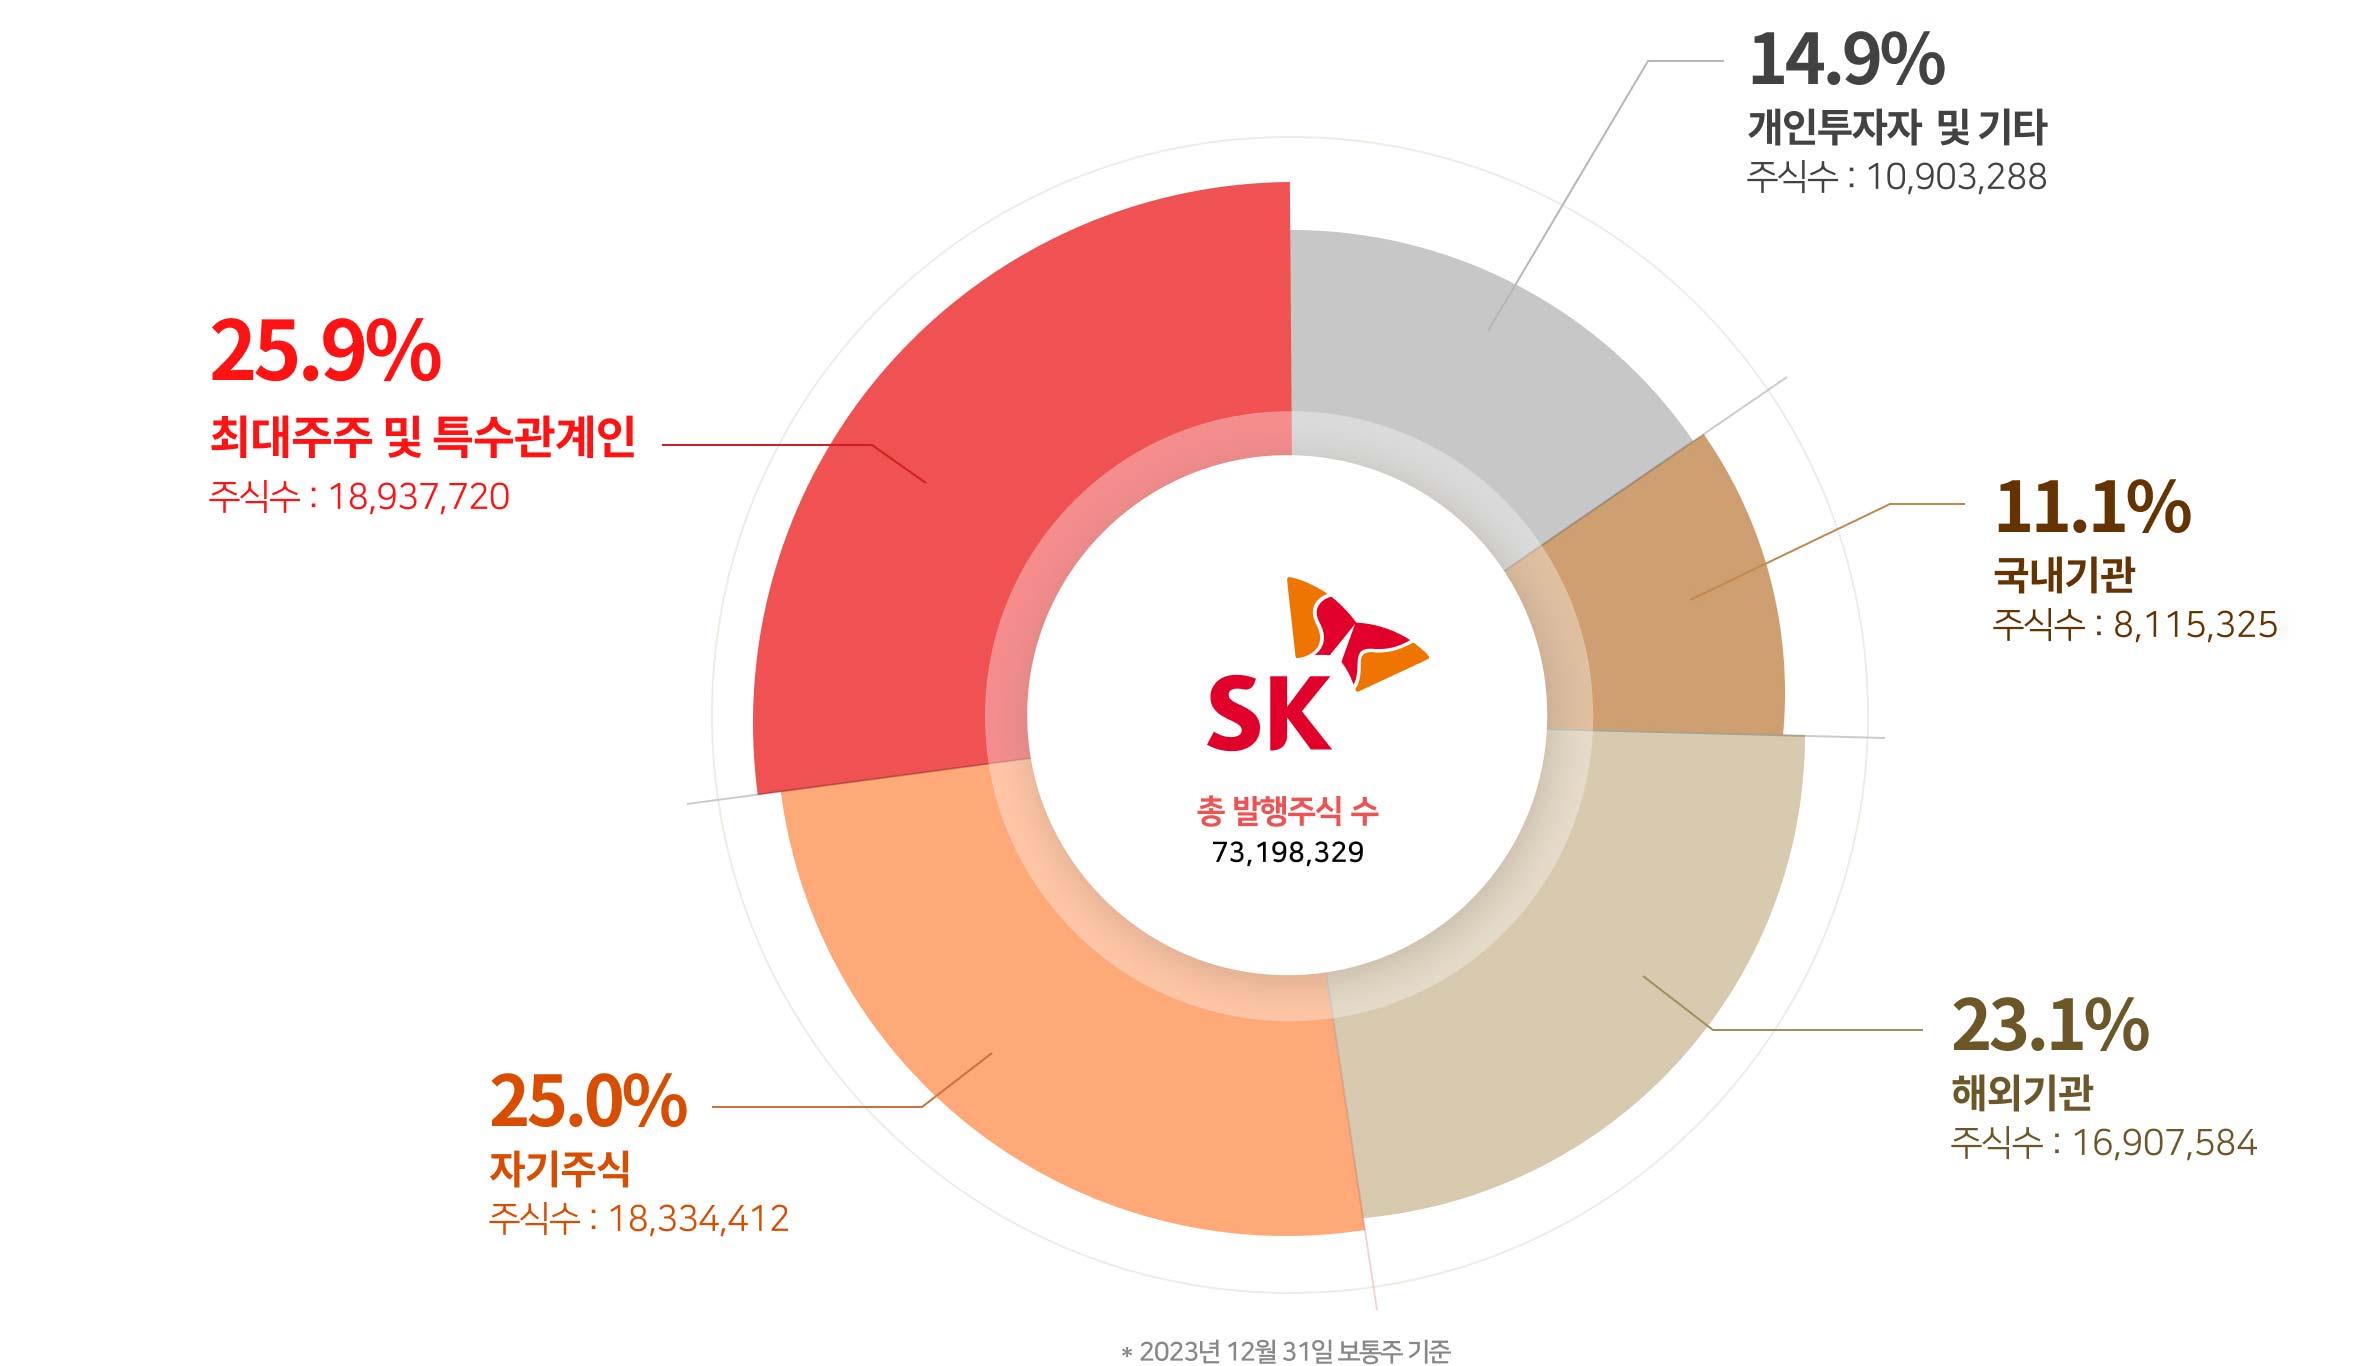 SK 주주구성 그래프.